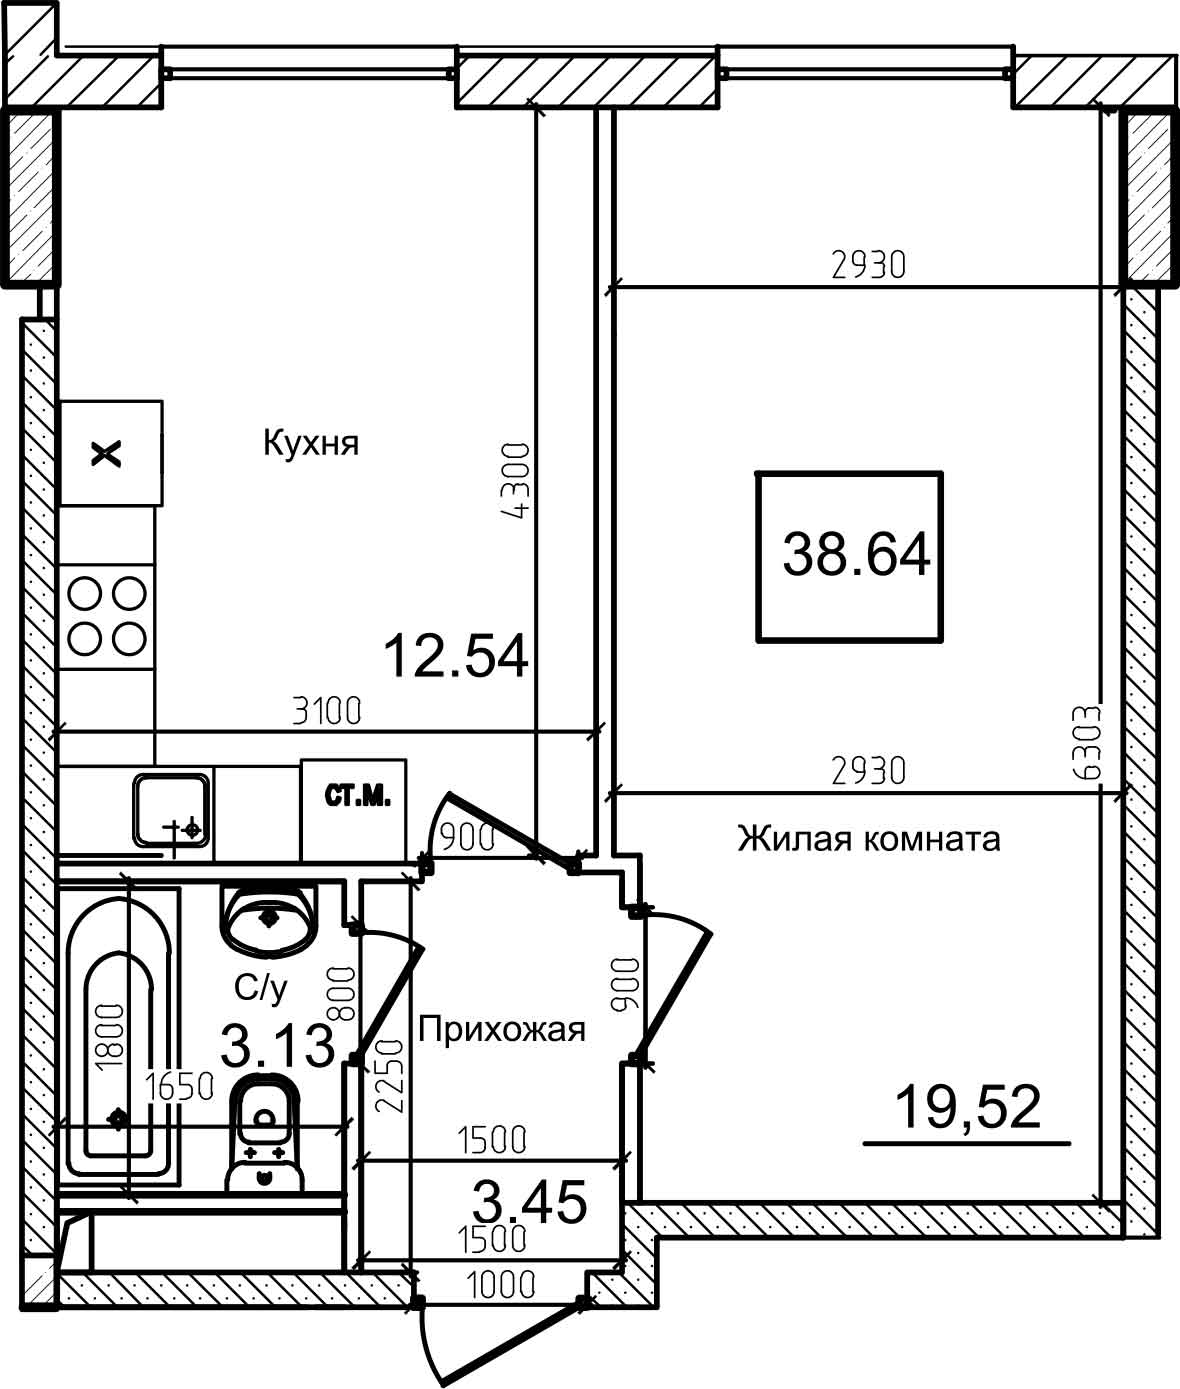 Планування 1-к квартира площею 38м2, AB-08-10/00009.